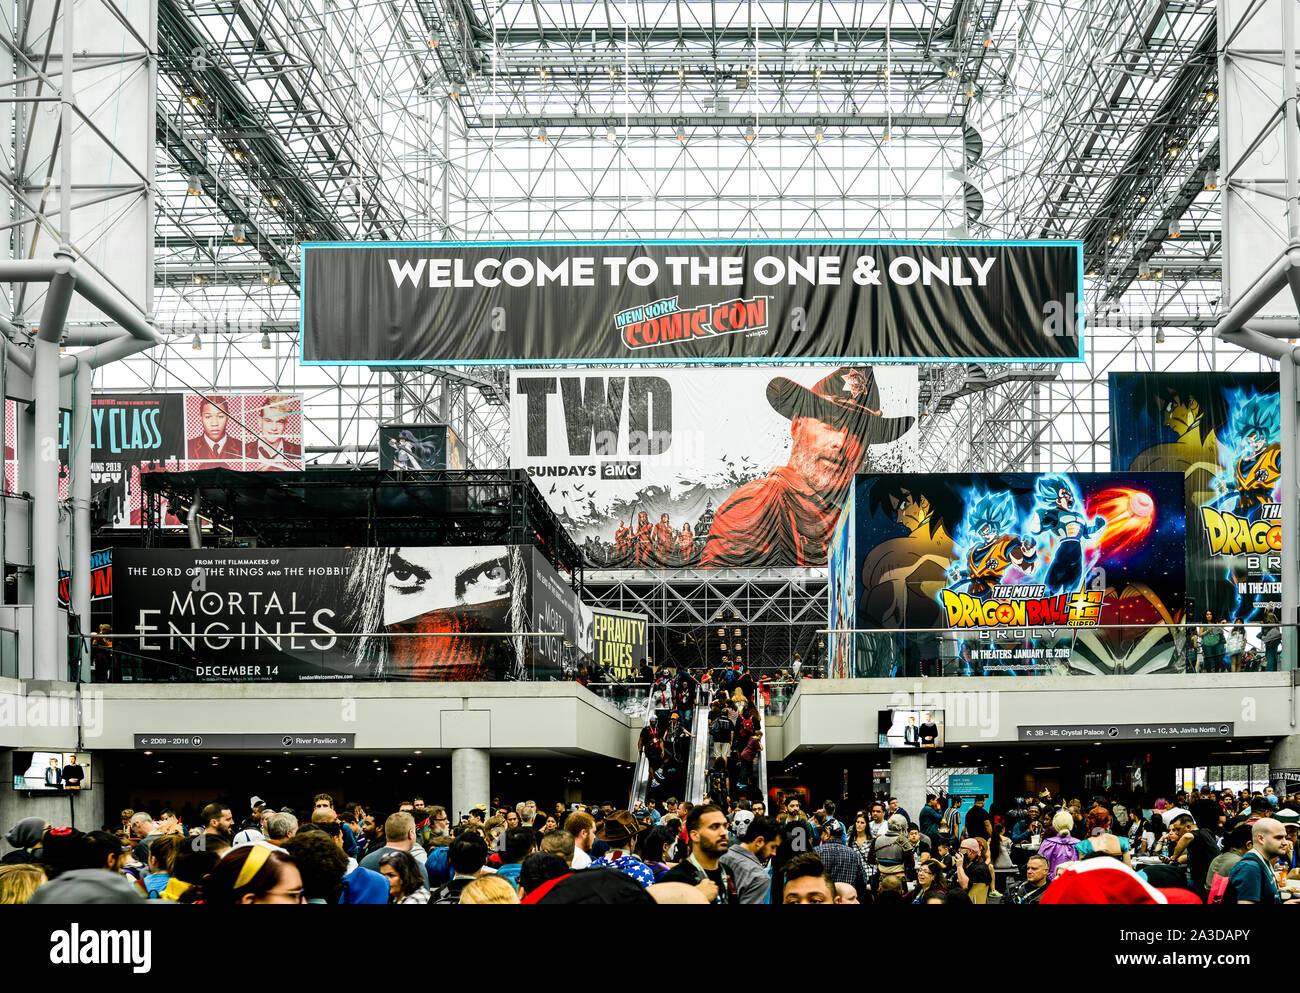 Jacob K. Javits Convention Center, New York New York - Oktober 10, 2018: Die volksmenge aus der populären New York Comic Con Konferenz. Stockfoto